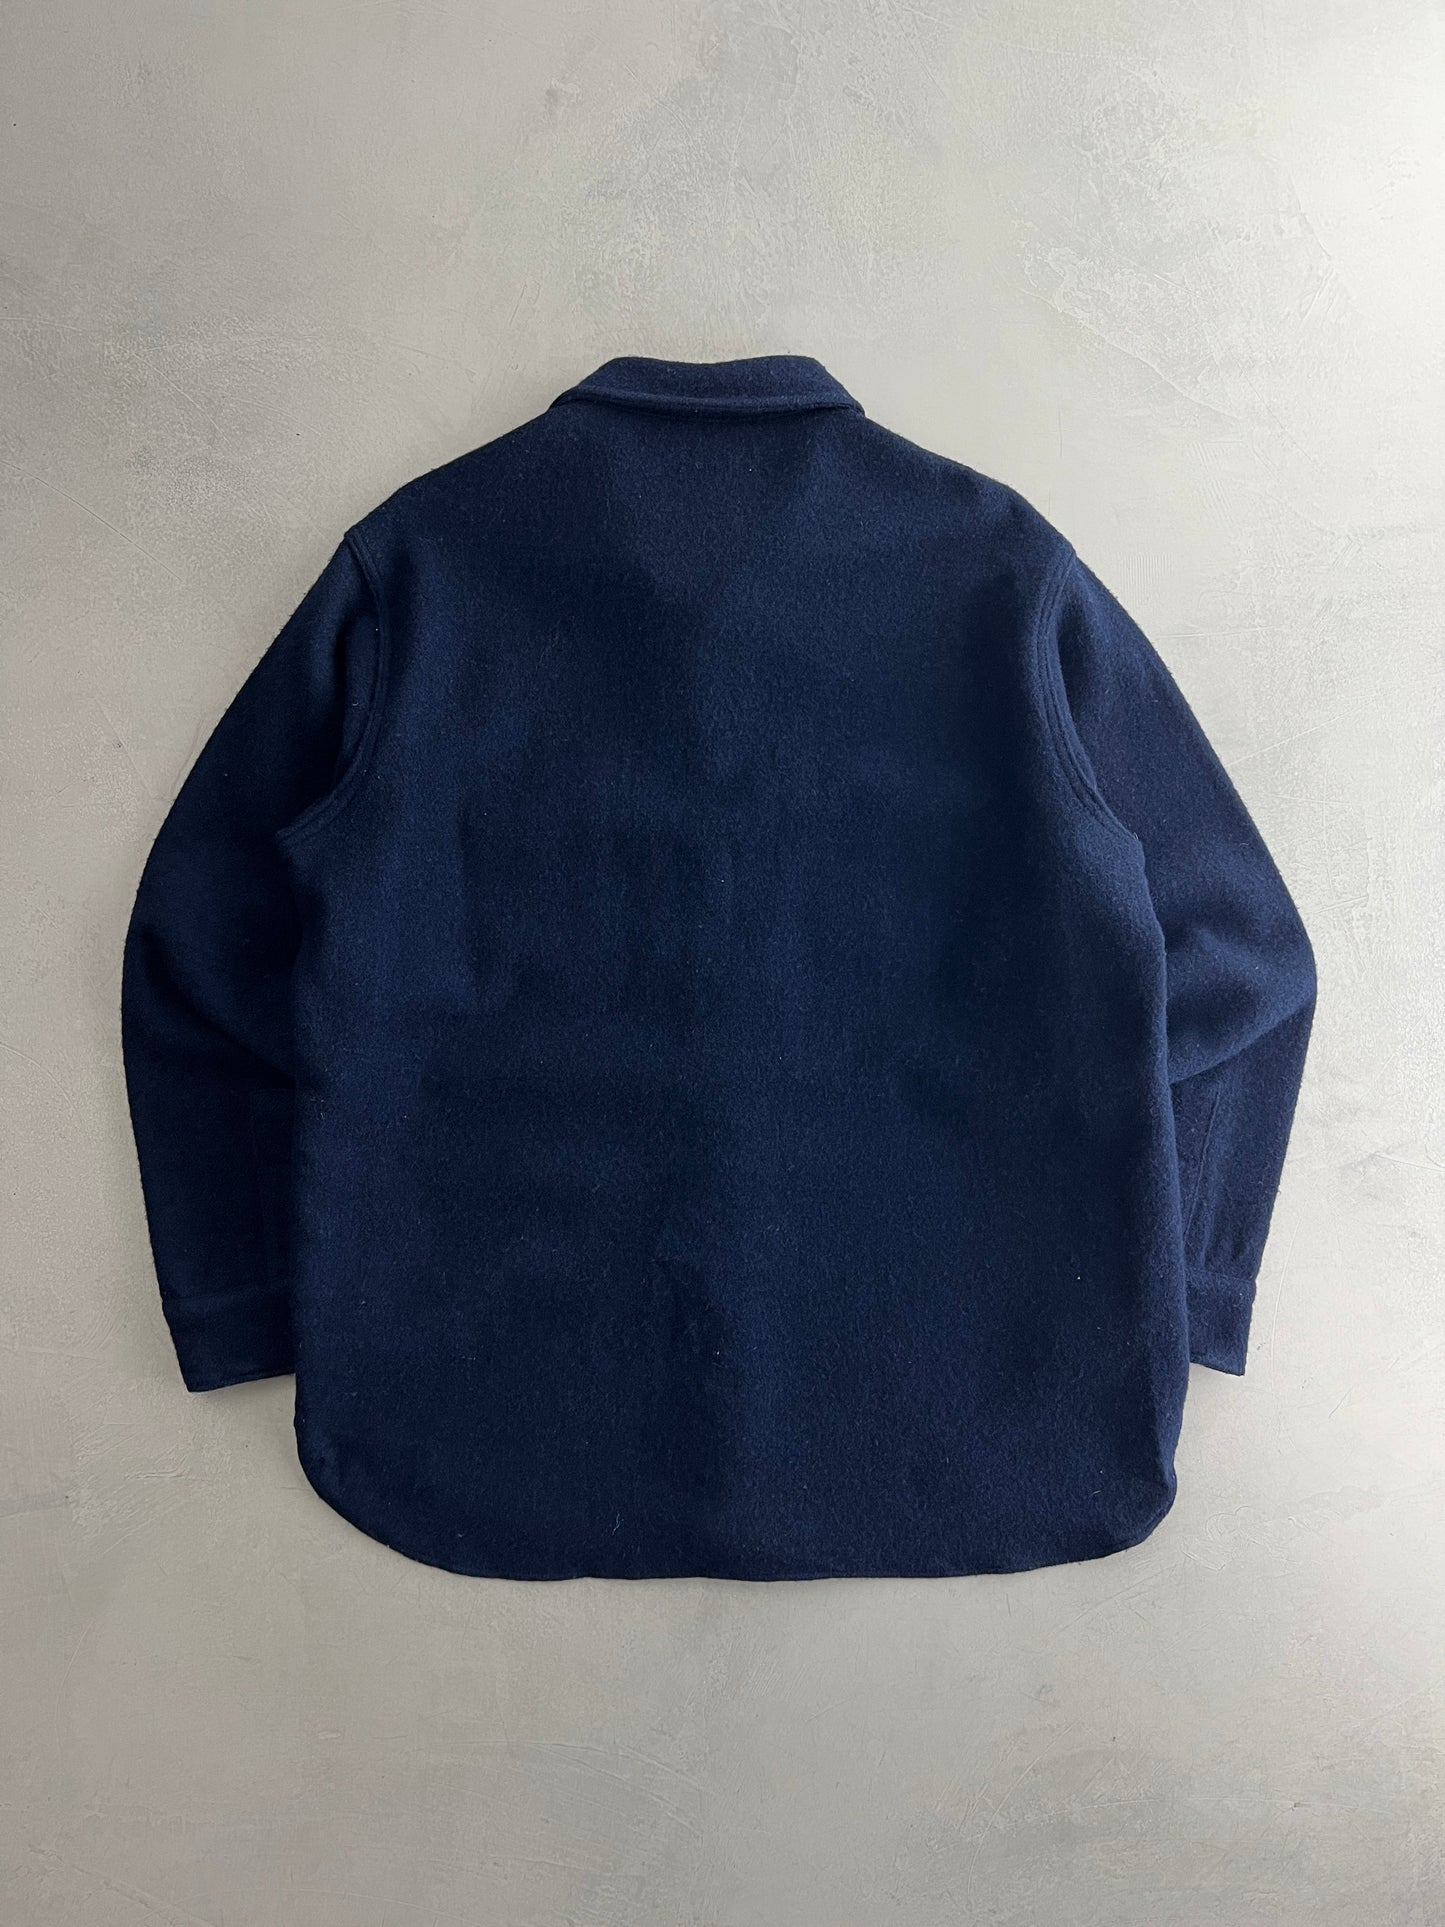 Woolrich Overshirt [L]